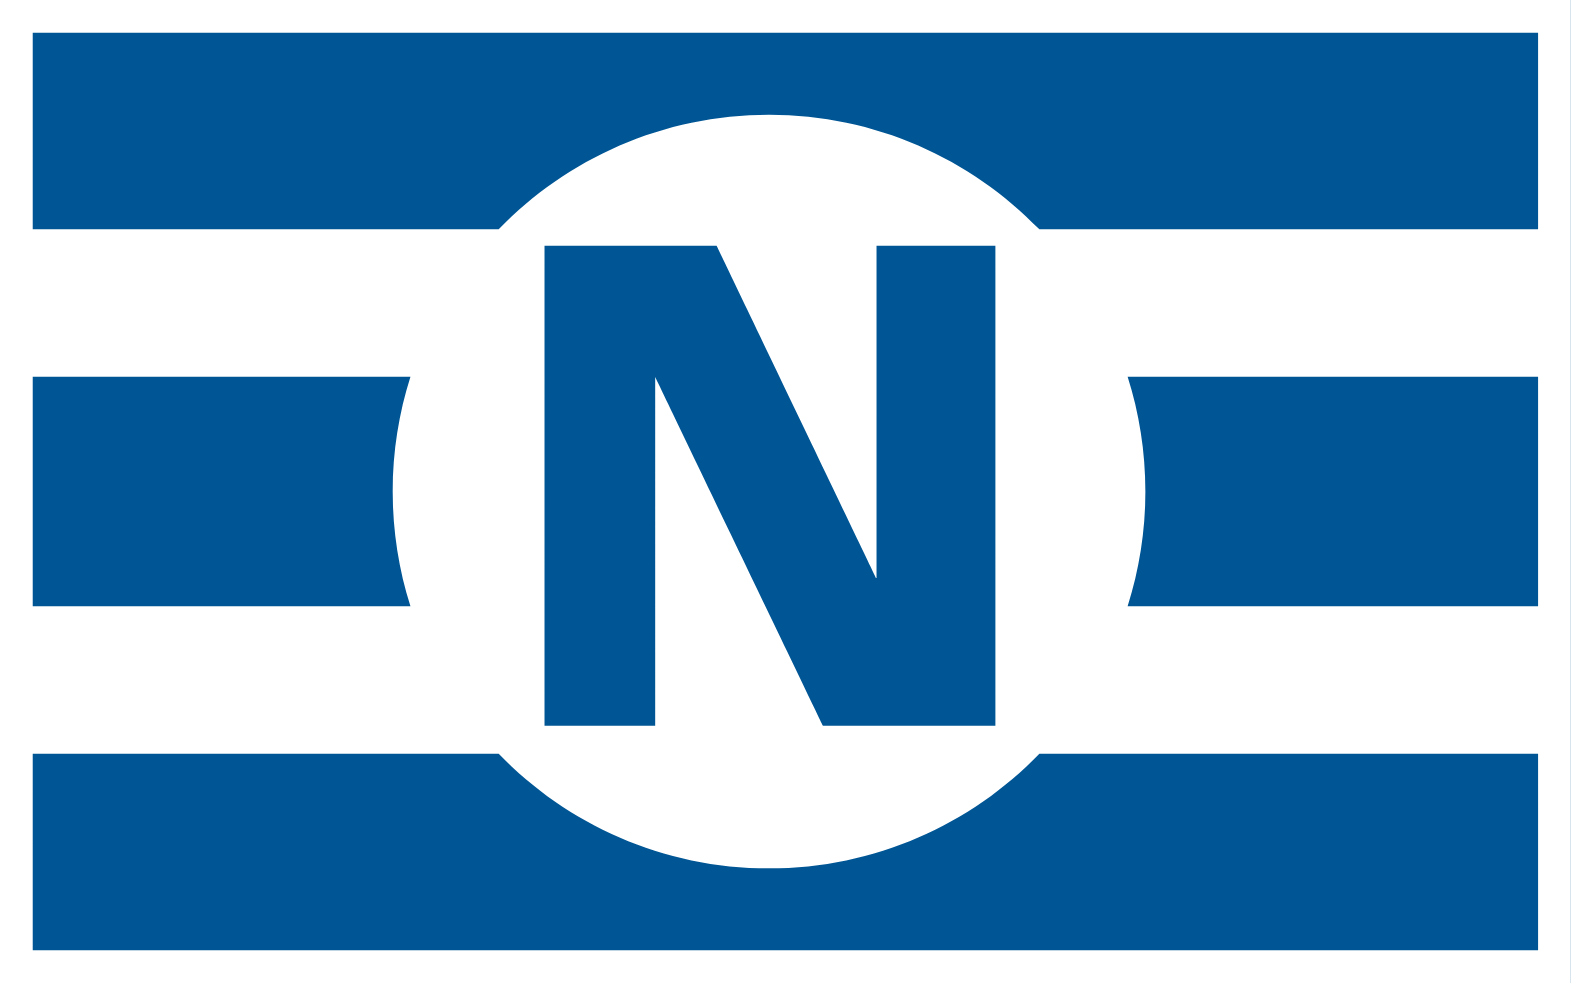 Navios Maritime Partners logo (transparent PNG)